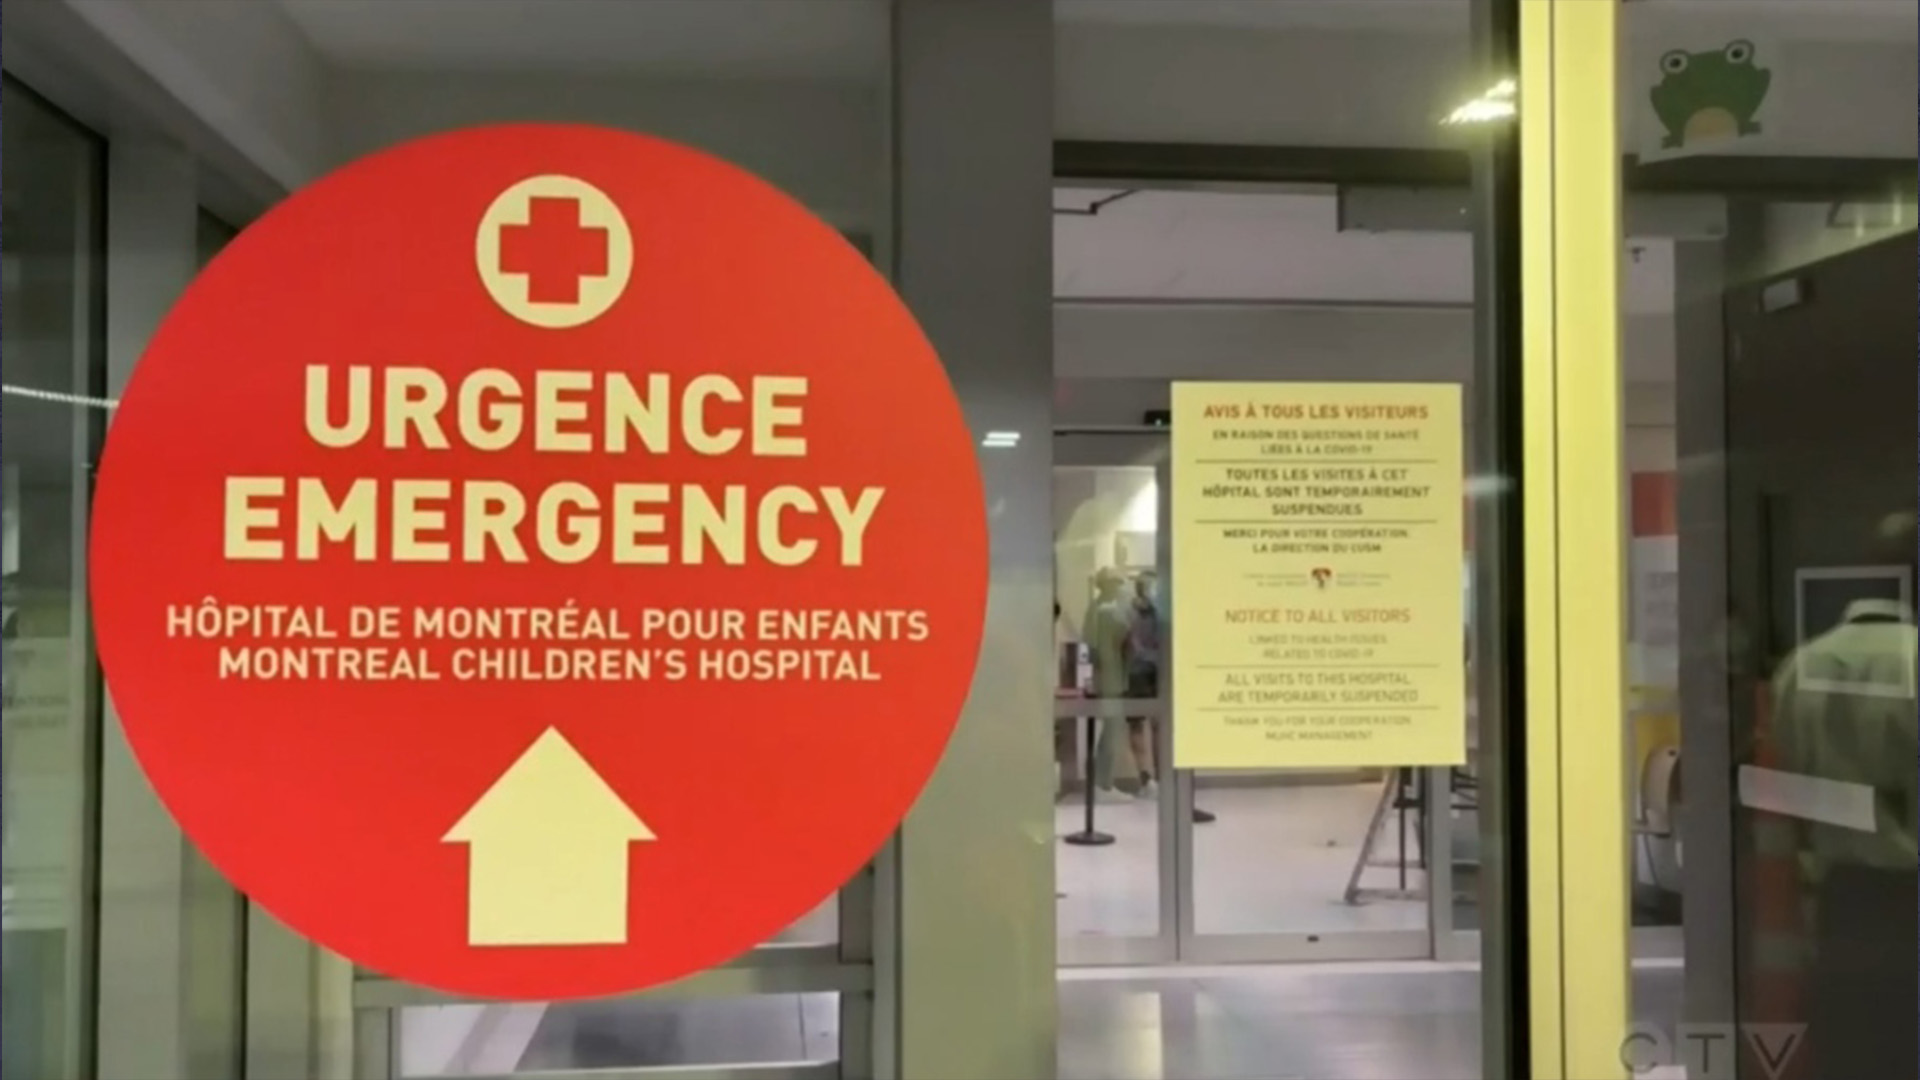 L'Hôpital de Montréal pour enfants a déclaré qu'il refusait certains patients et que les infirmières avaient écourté leurs vacances car la salle d'urgence s'est remplie ces derniers jours avec «un nombre significativement plus élevé d'enfants malades et gravement malades».